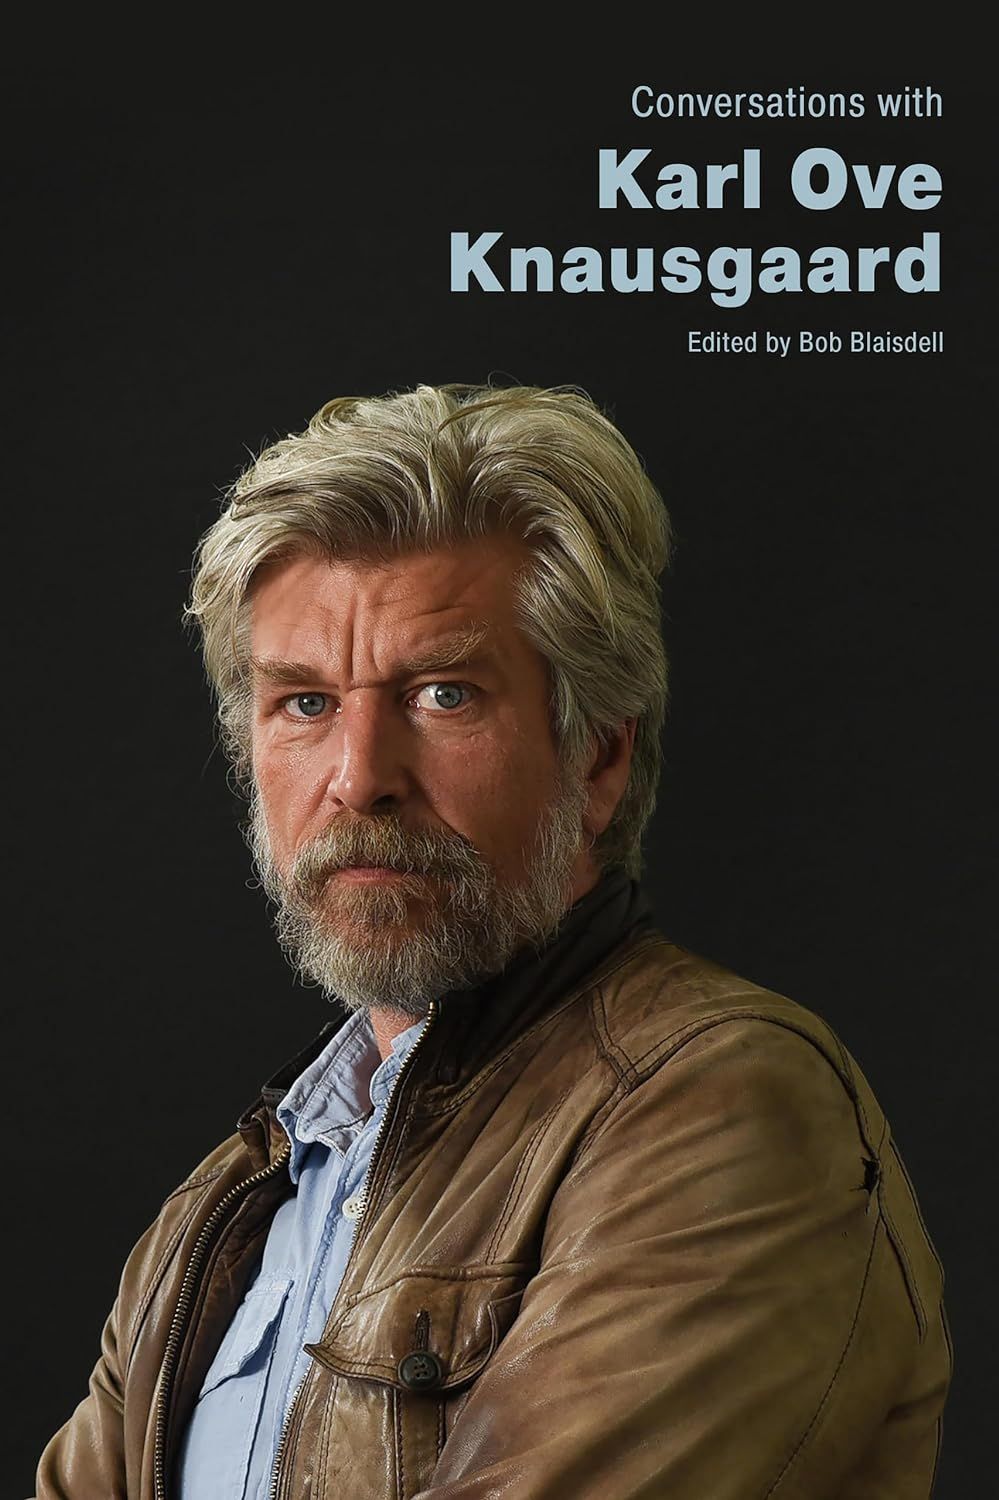 You’re Such a Character: The Knausgaard Behind Knausgaard